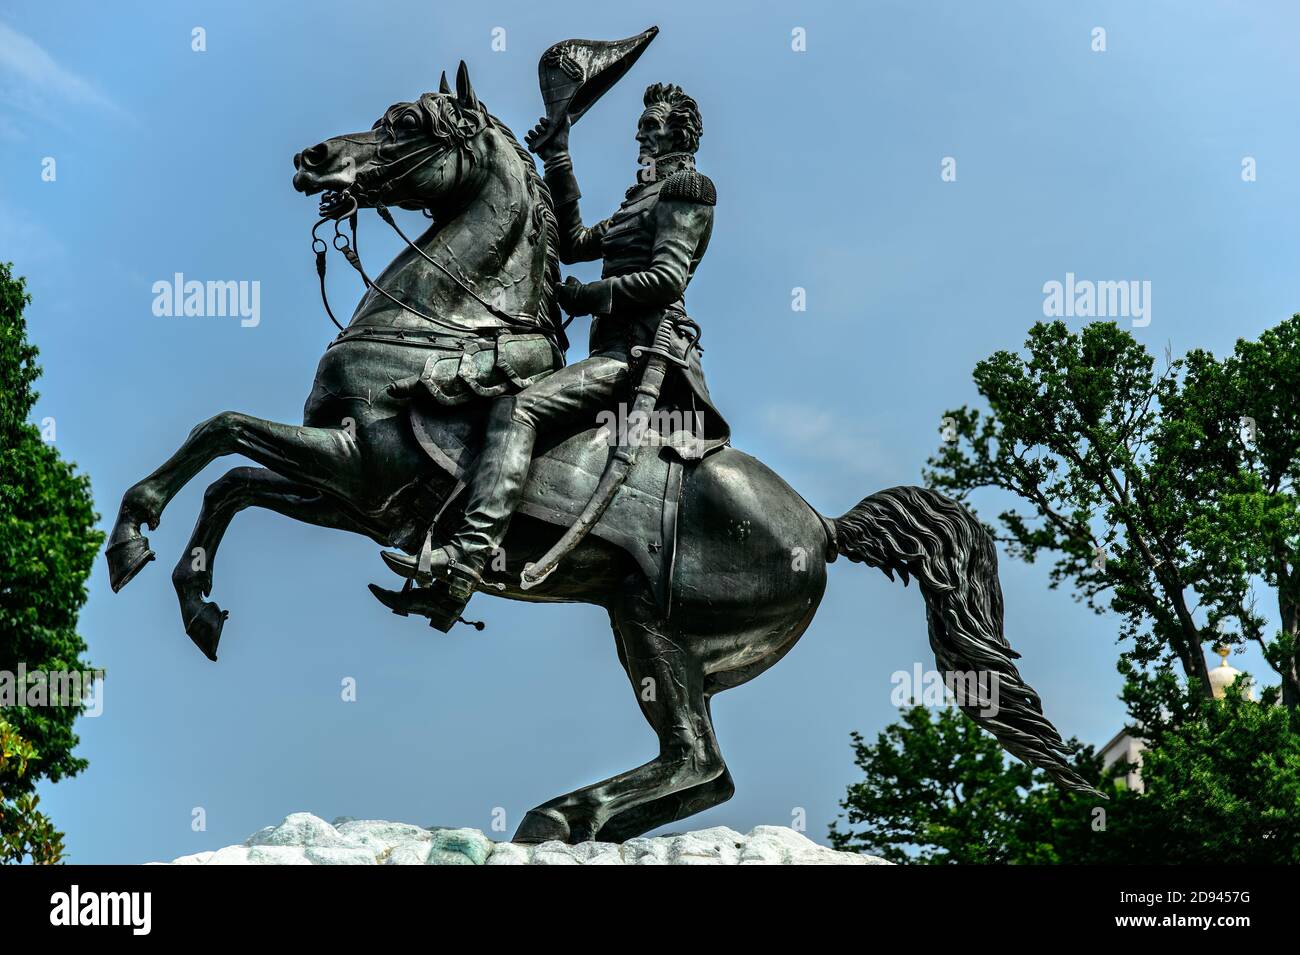 Estatua de bronce del General Andrew Jackson en la Plaza Lafayette ubicada en el Parque del Presidente en Washington, D.C. Foto de stock